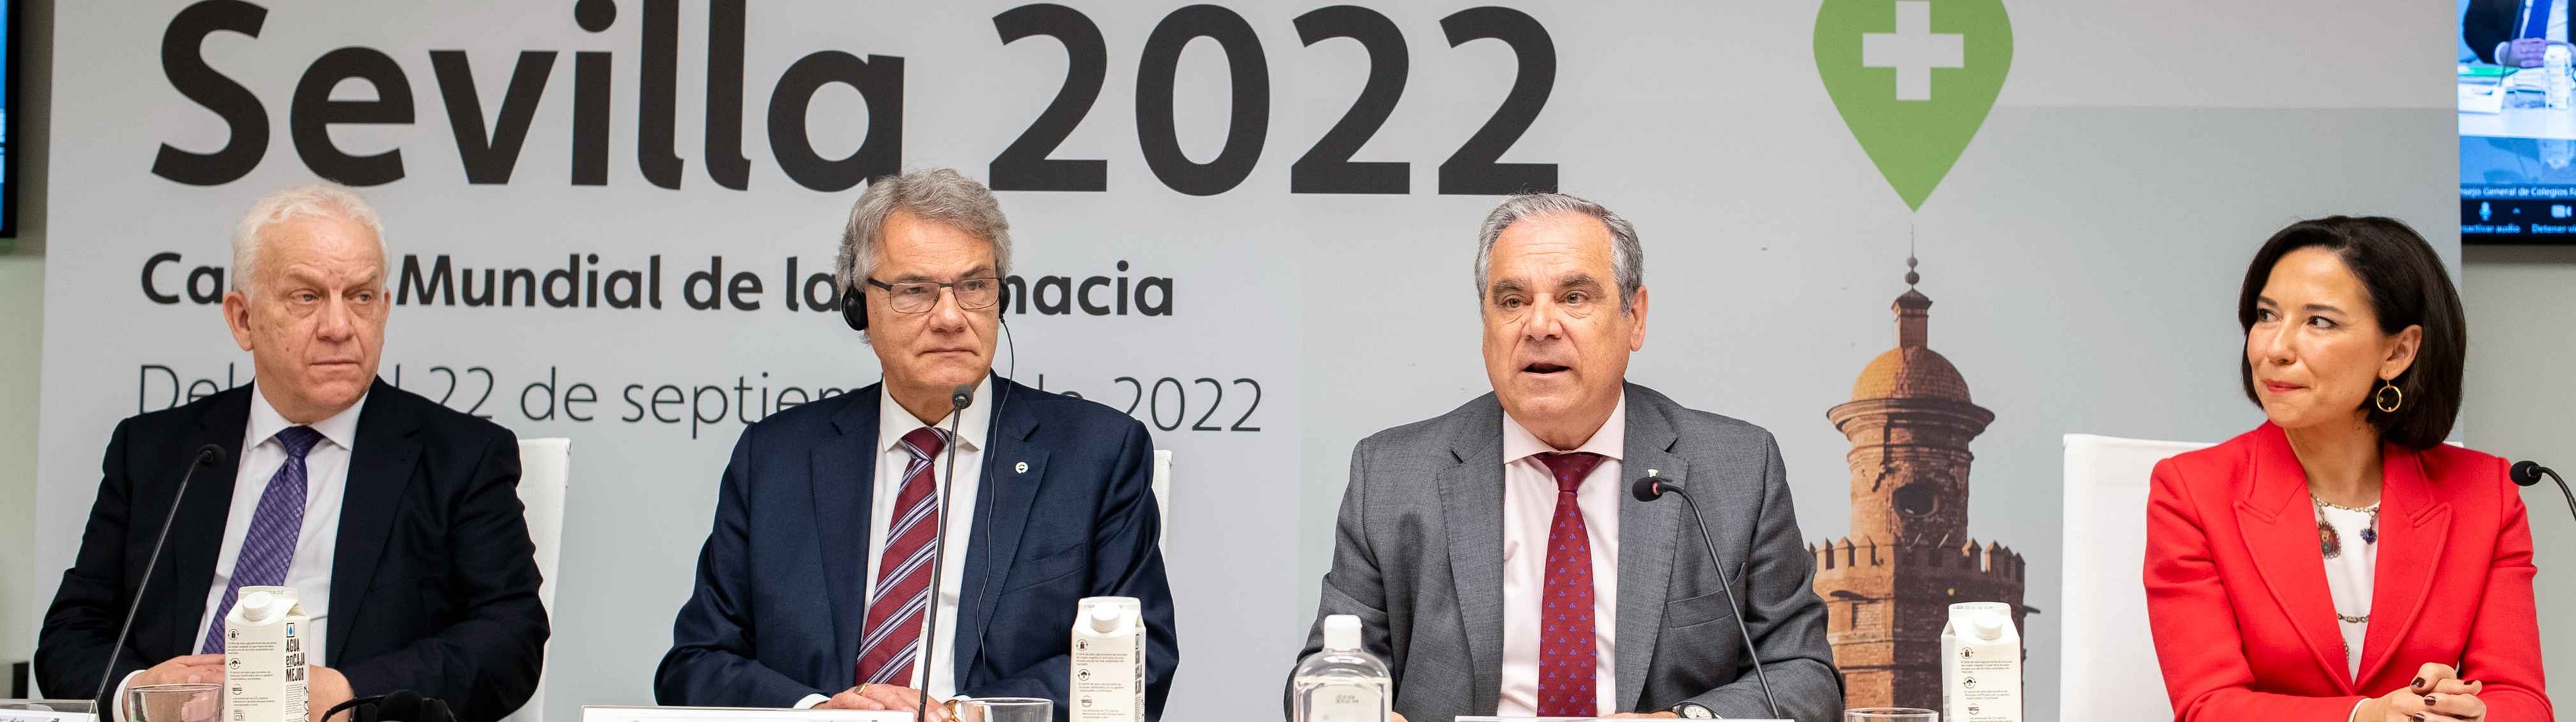 Sevilla reunirá a más de 5.000 farmacéuticos de todo el mundo en septiembre